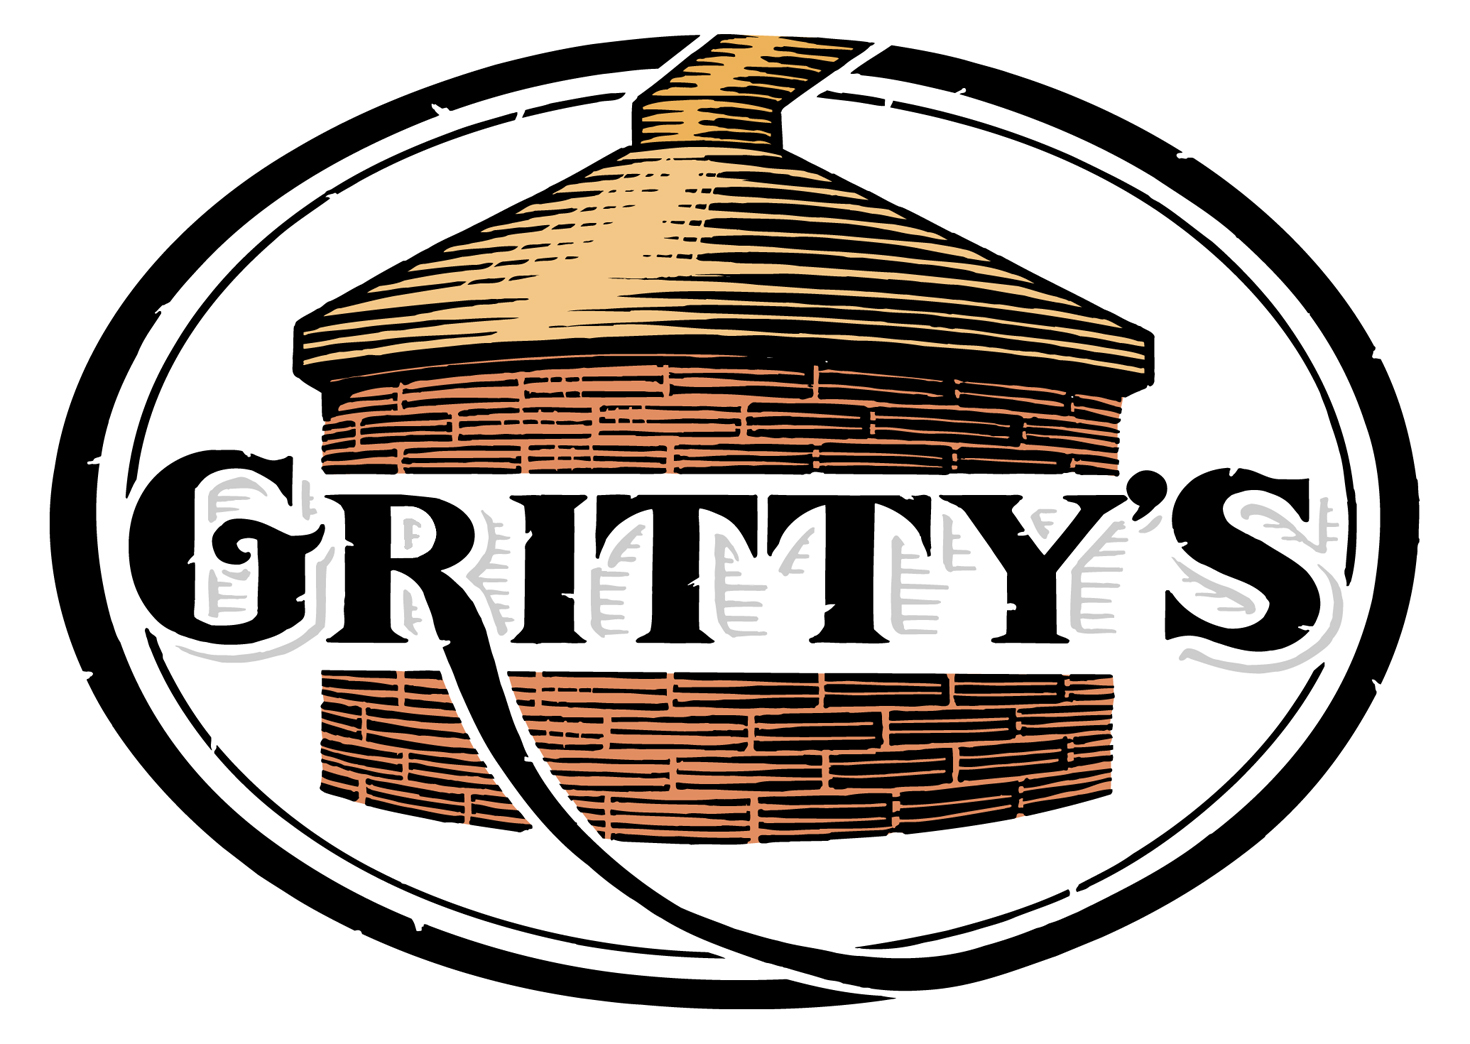 Gritty McDuff's